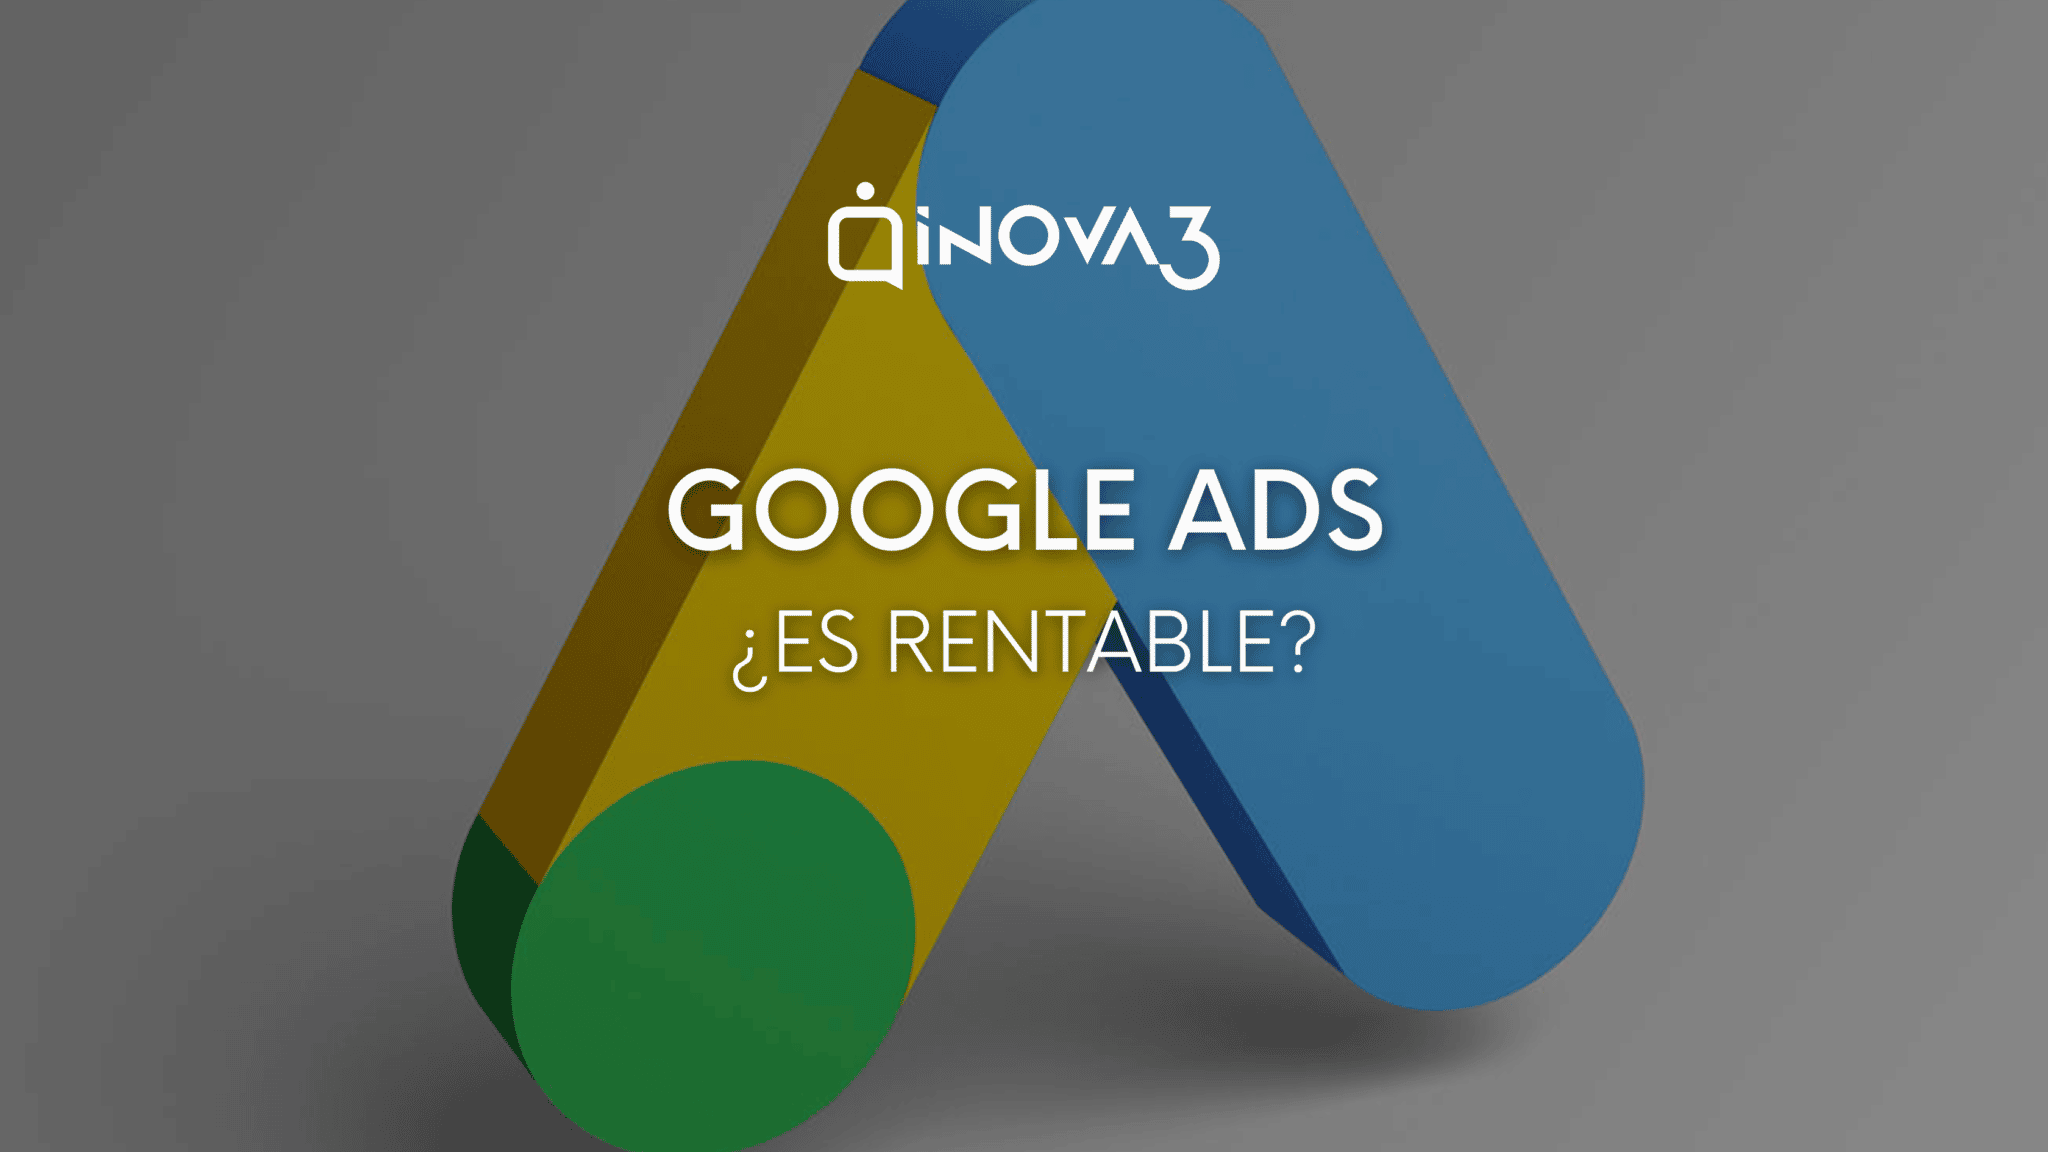 En este momento estás viendo ¿Es rentable Google Ads? inova3 responde